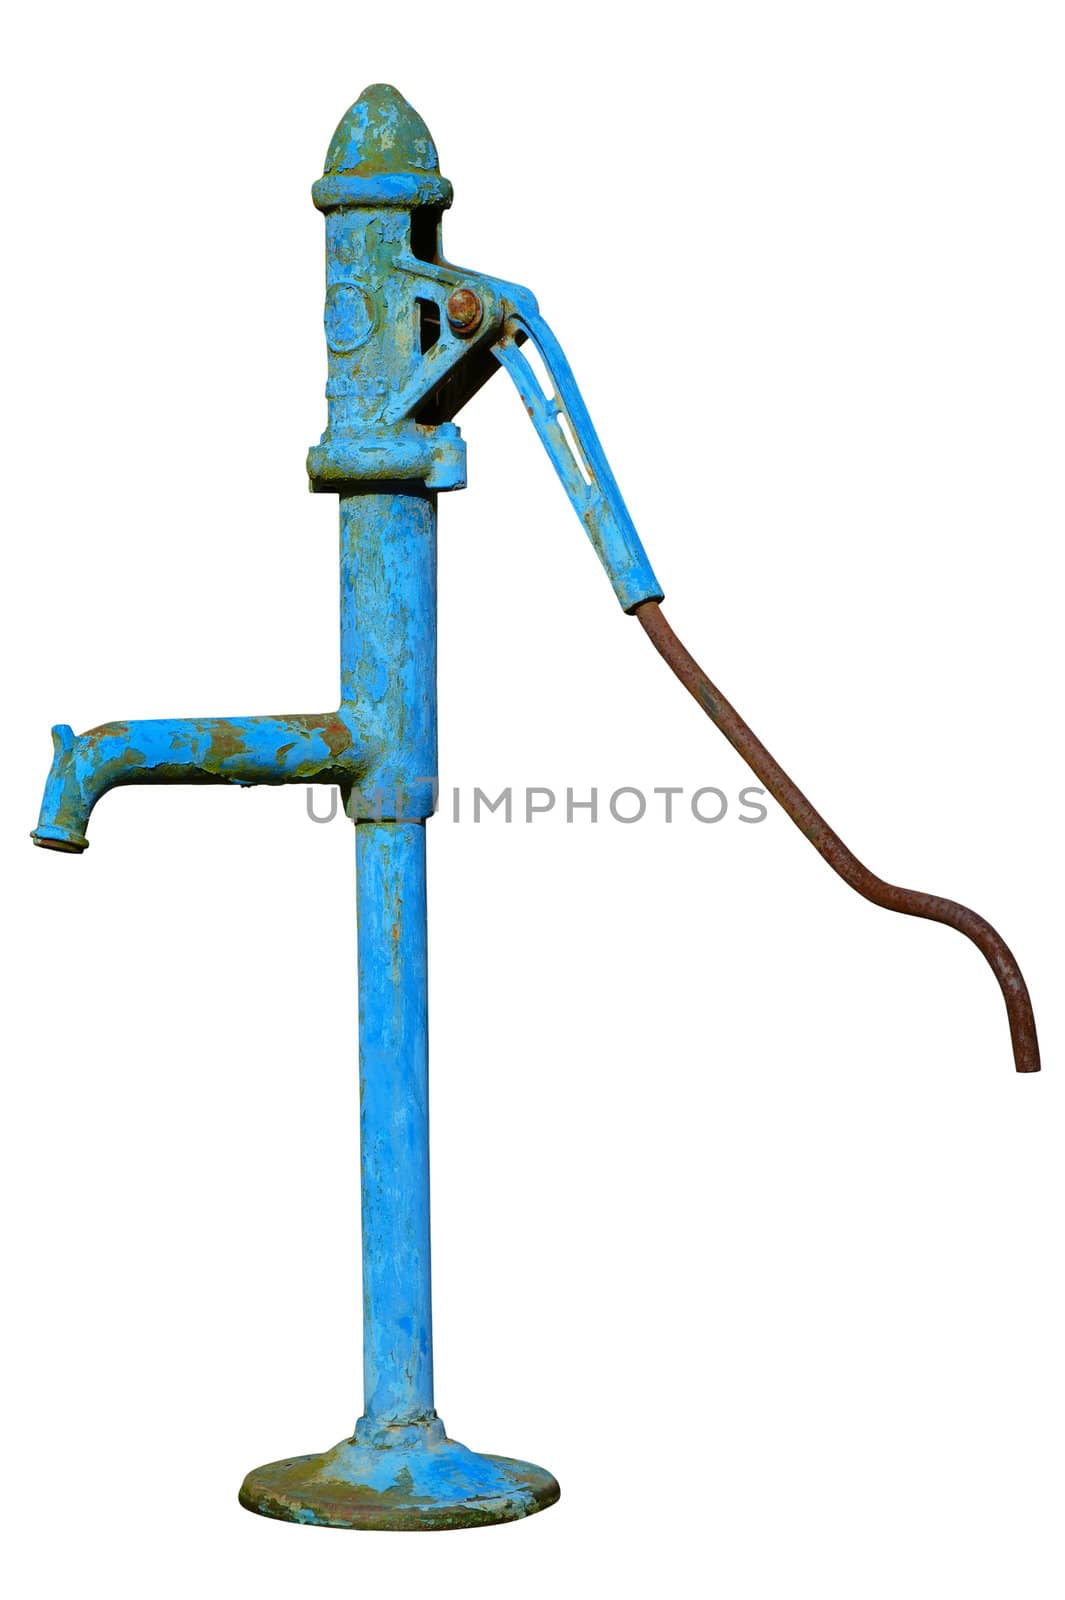 Water pump by Kamensky